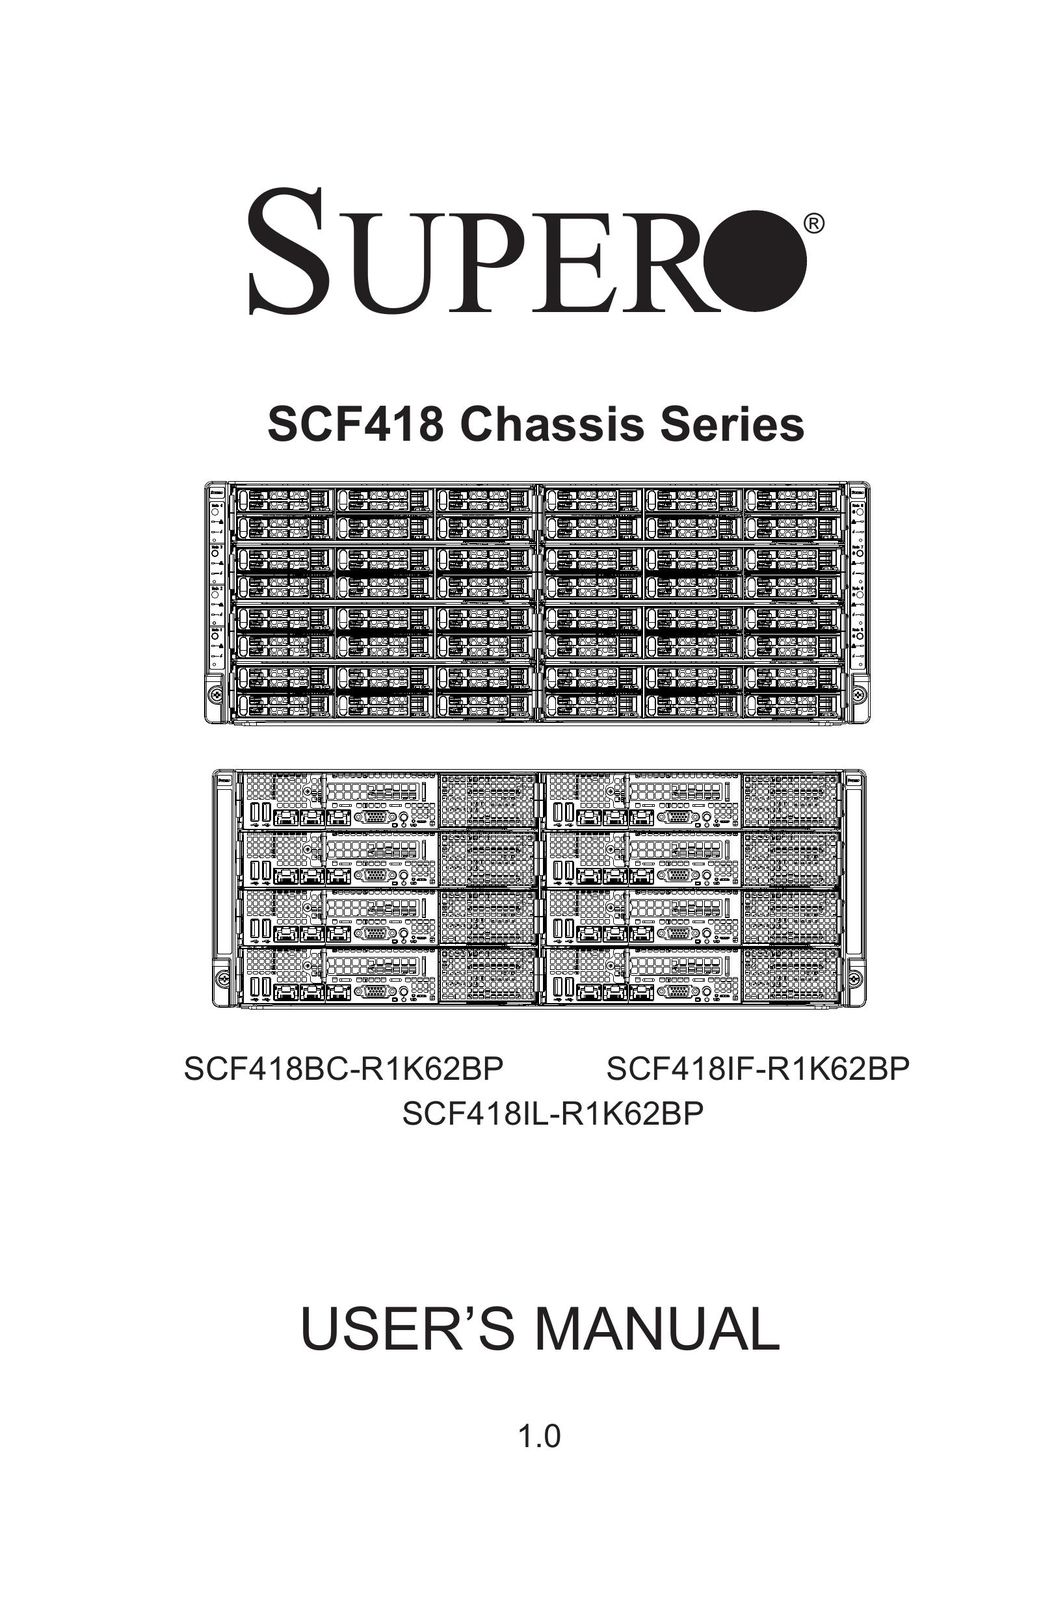 SUPER MICRO Computer SCF418C-R1K62BP Computer Hardware User Manual